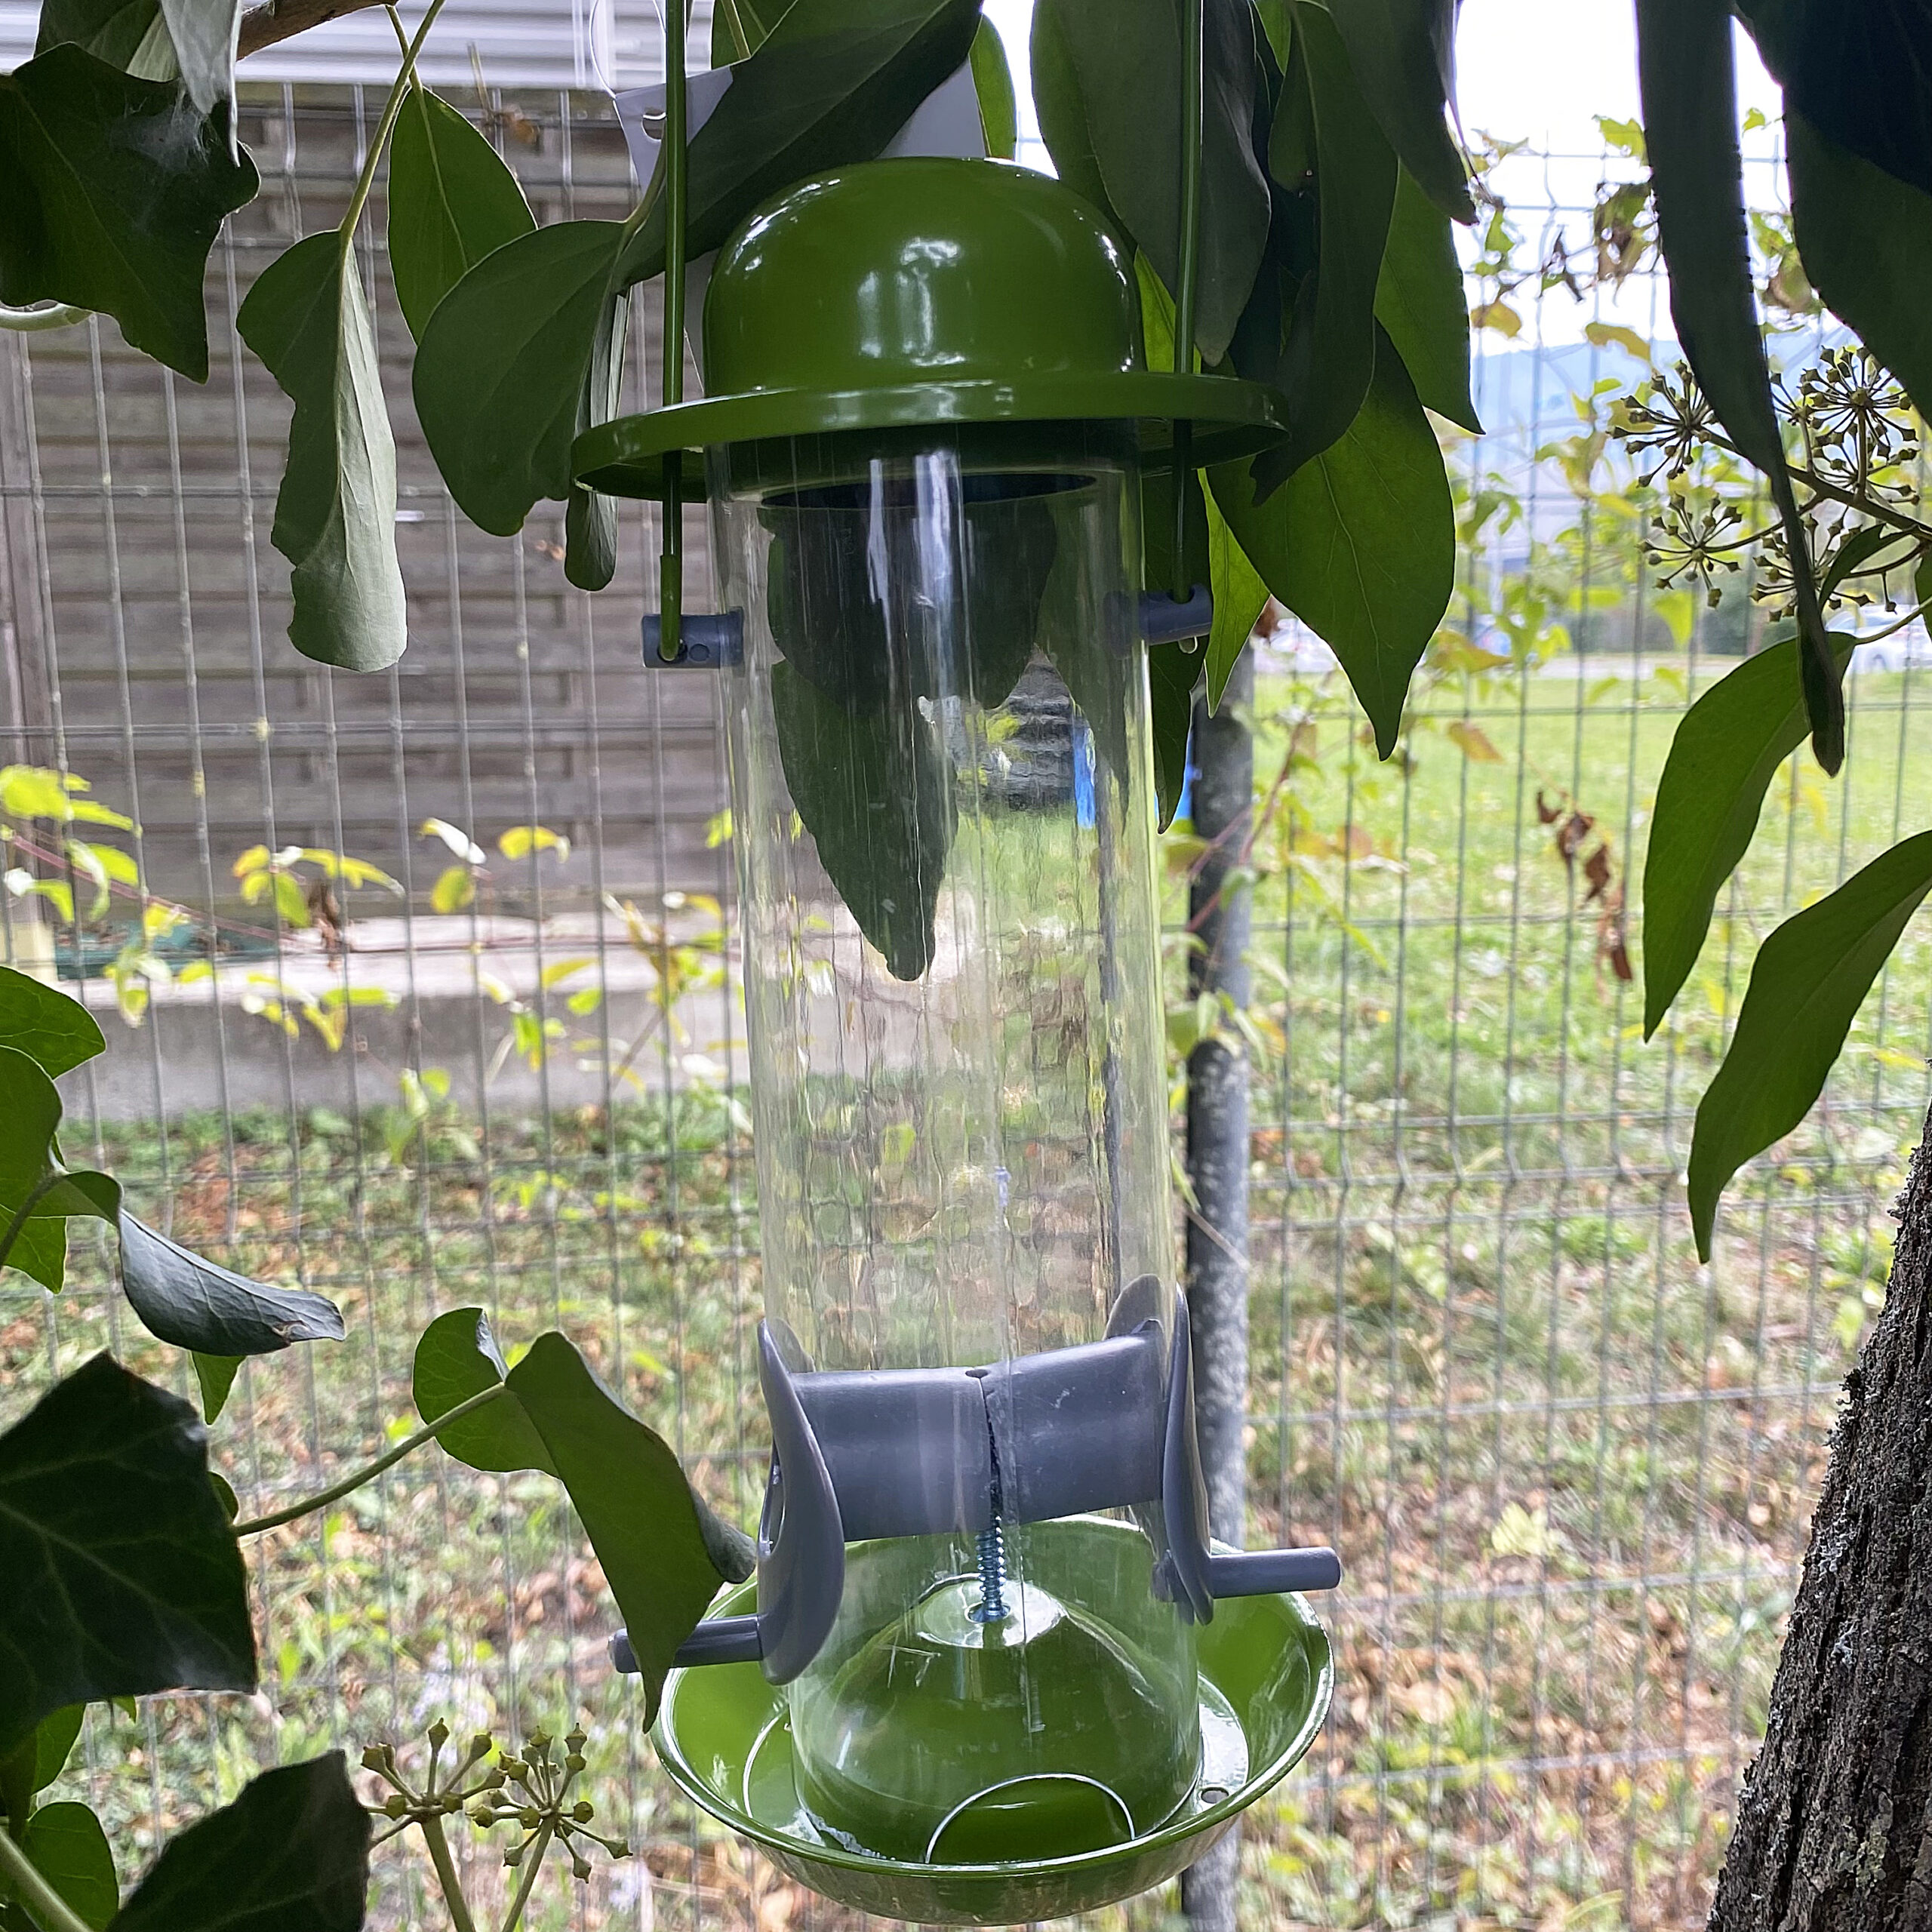 DIY Oiseaux de nos Jardins : 9 Plantes pour bien les nourrir - Blog